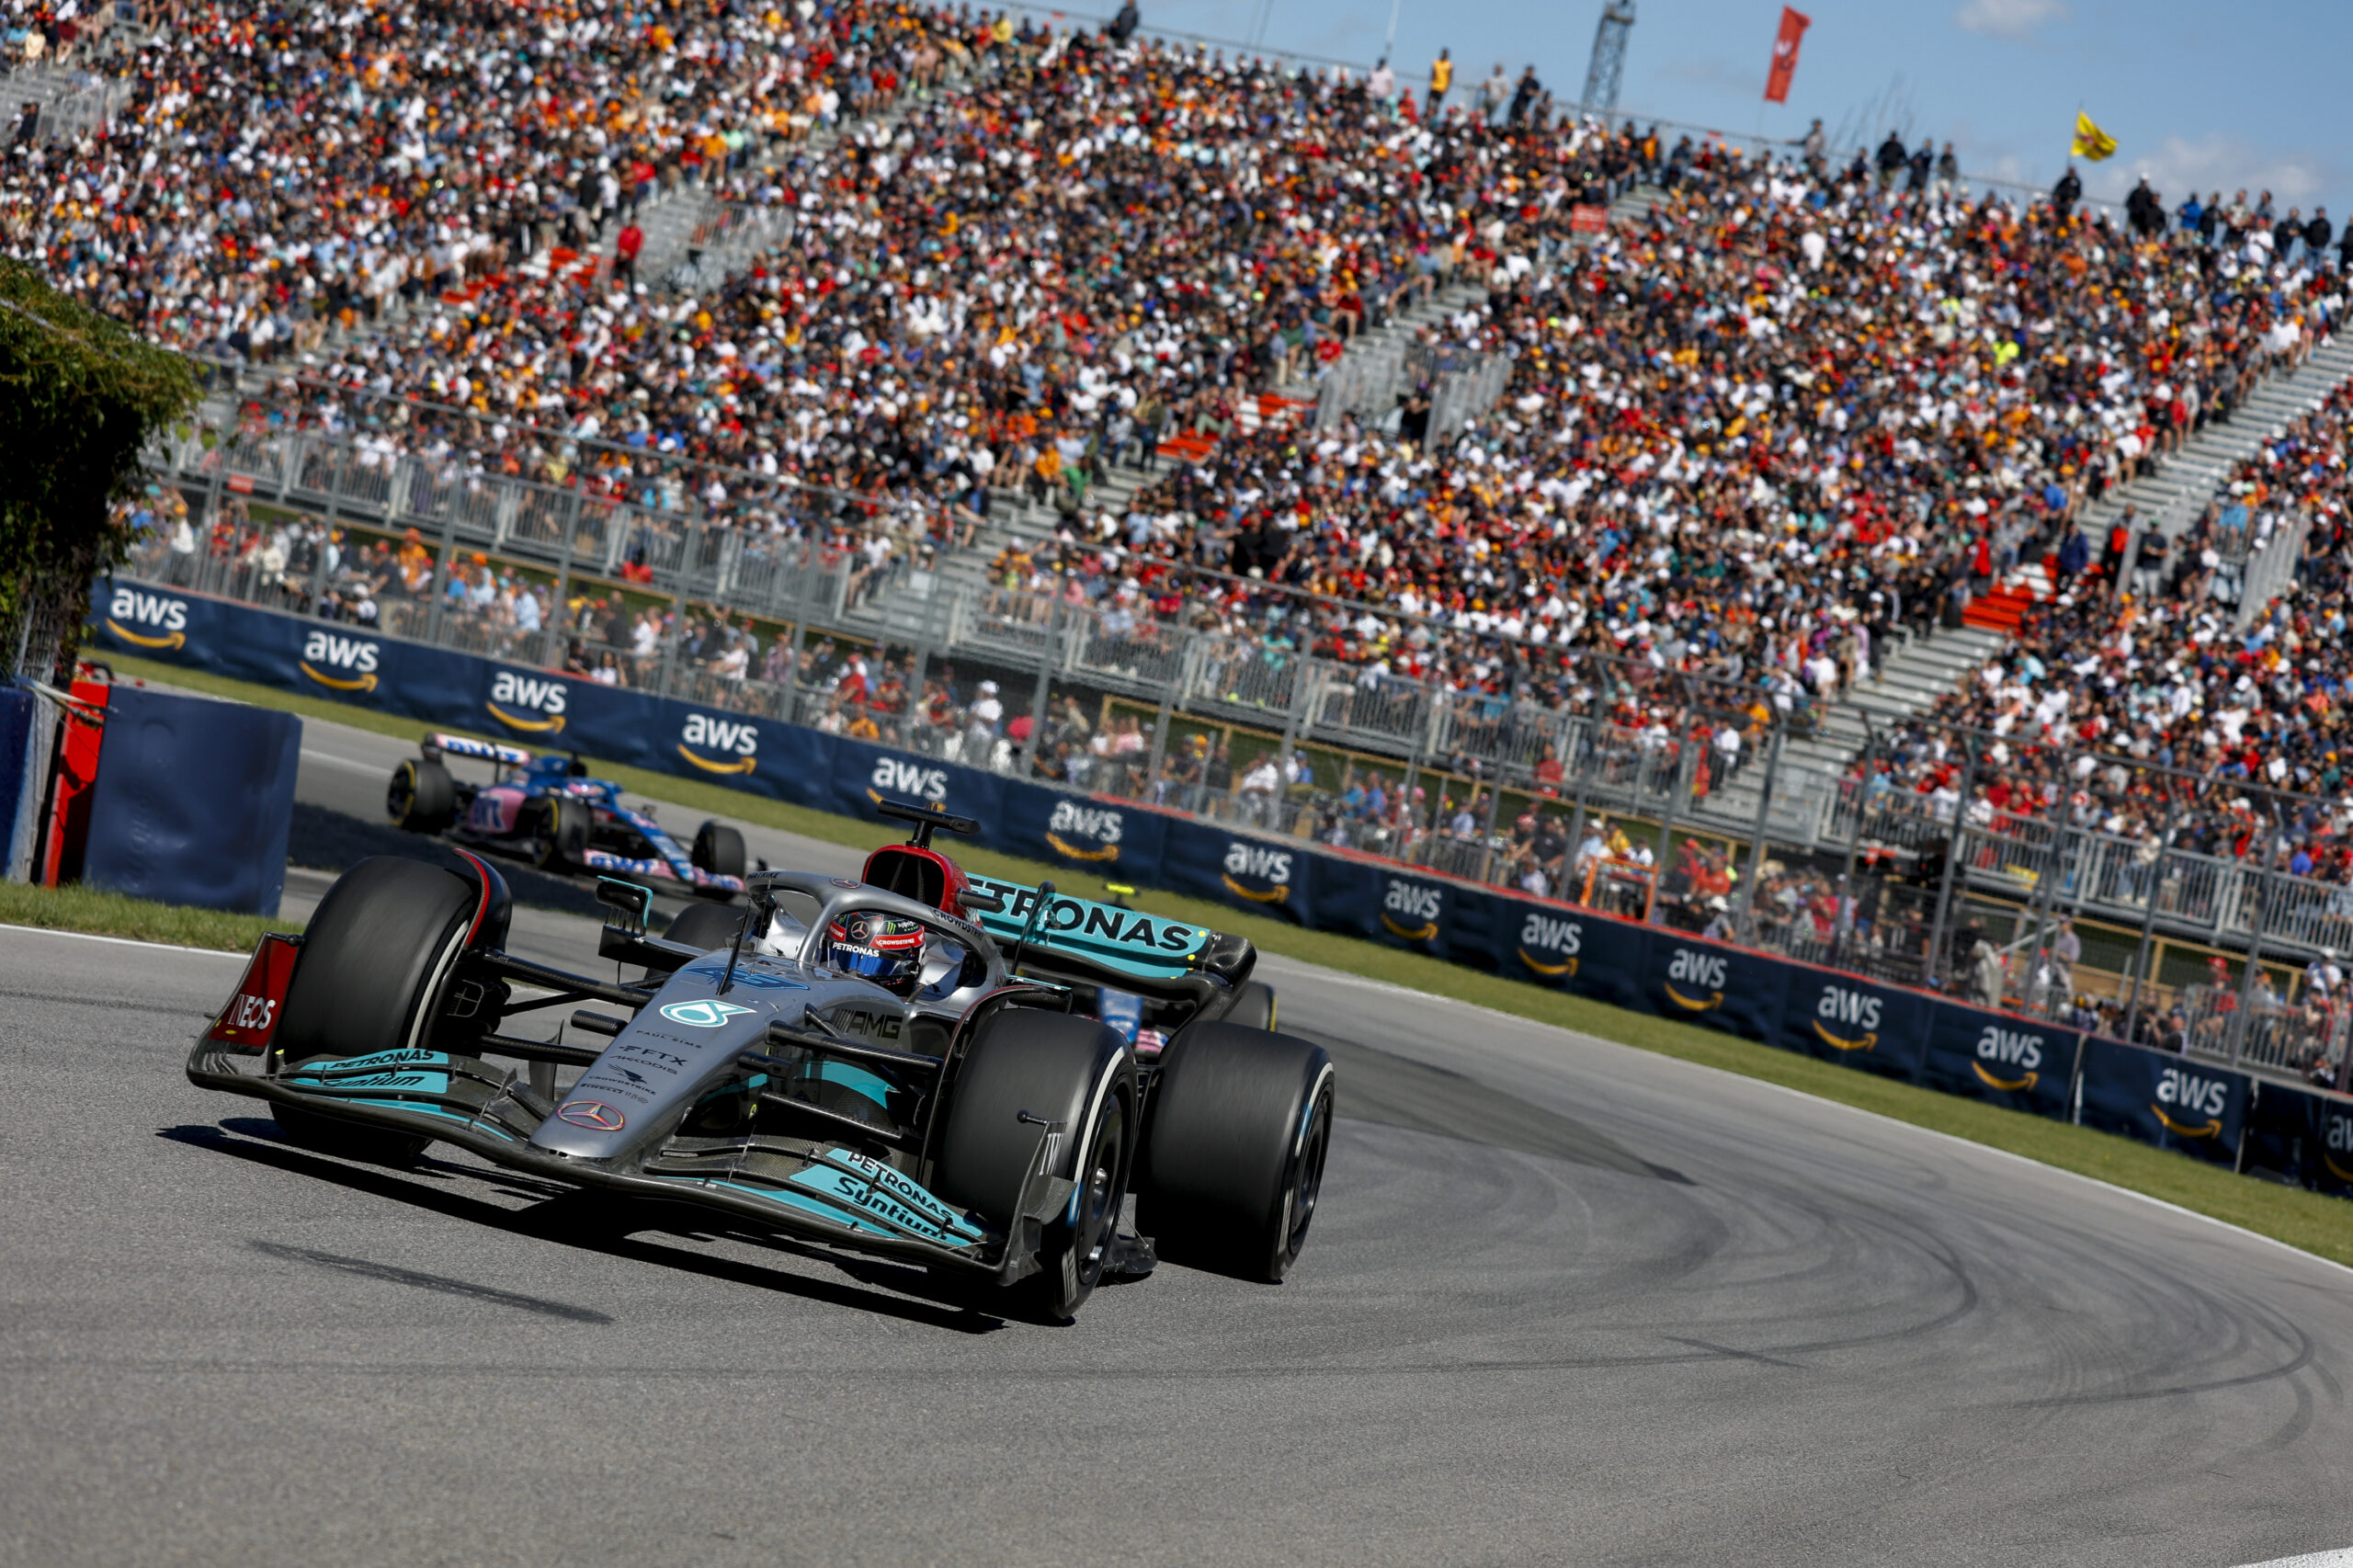 Mercedes confirma atualizações no W13 para Silverstone: “Vamos nos esforçar ao máximo”